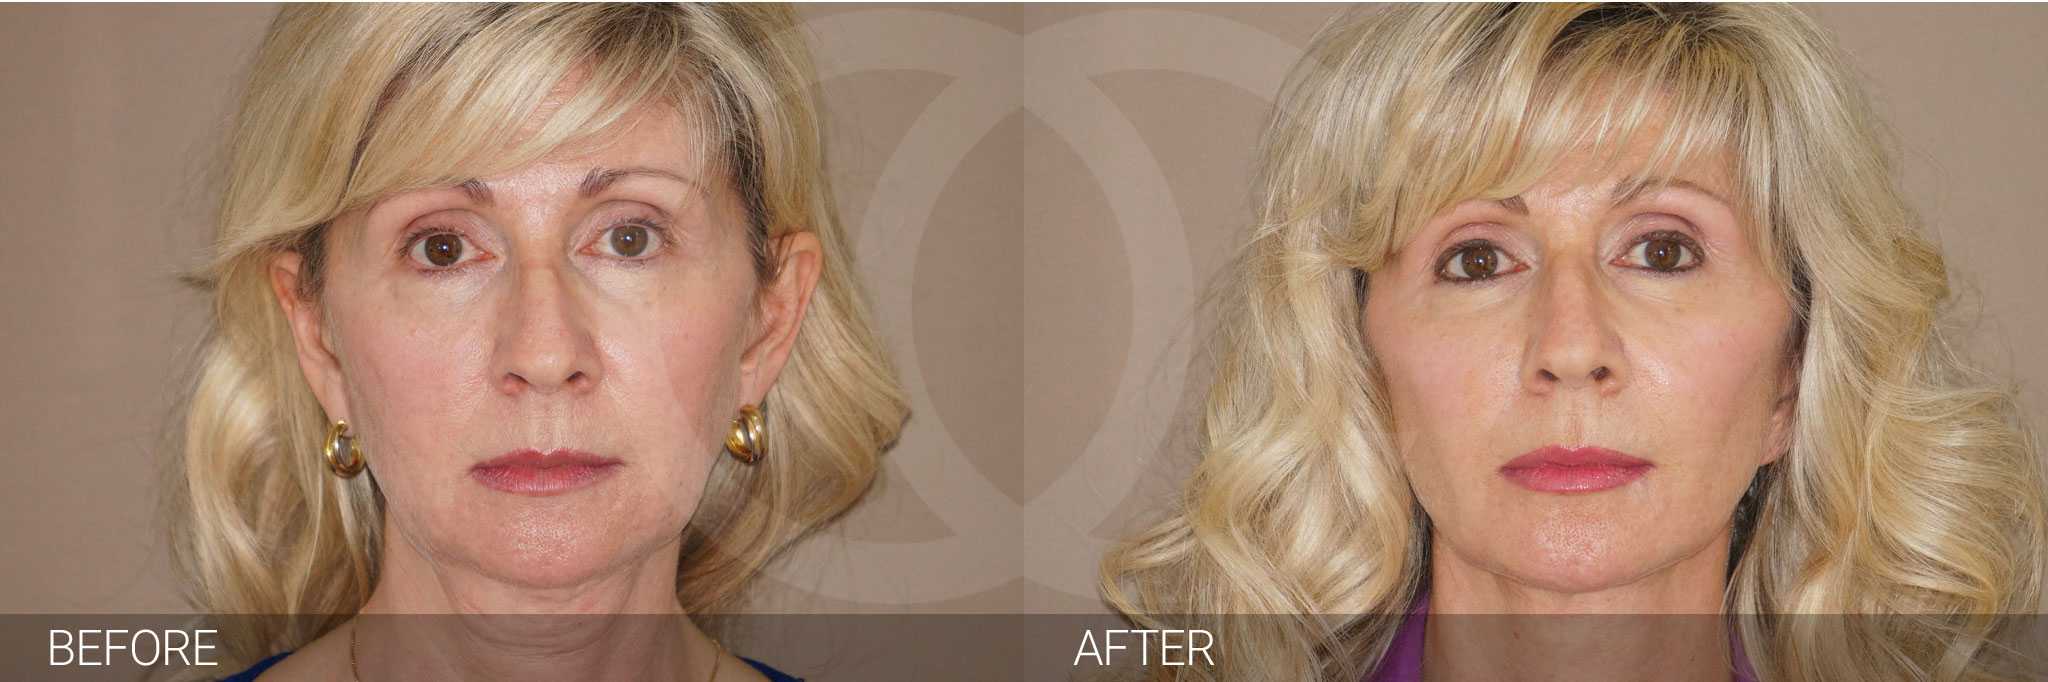 Rejuvenecimiento facial más natural y duradero con el lifting facial